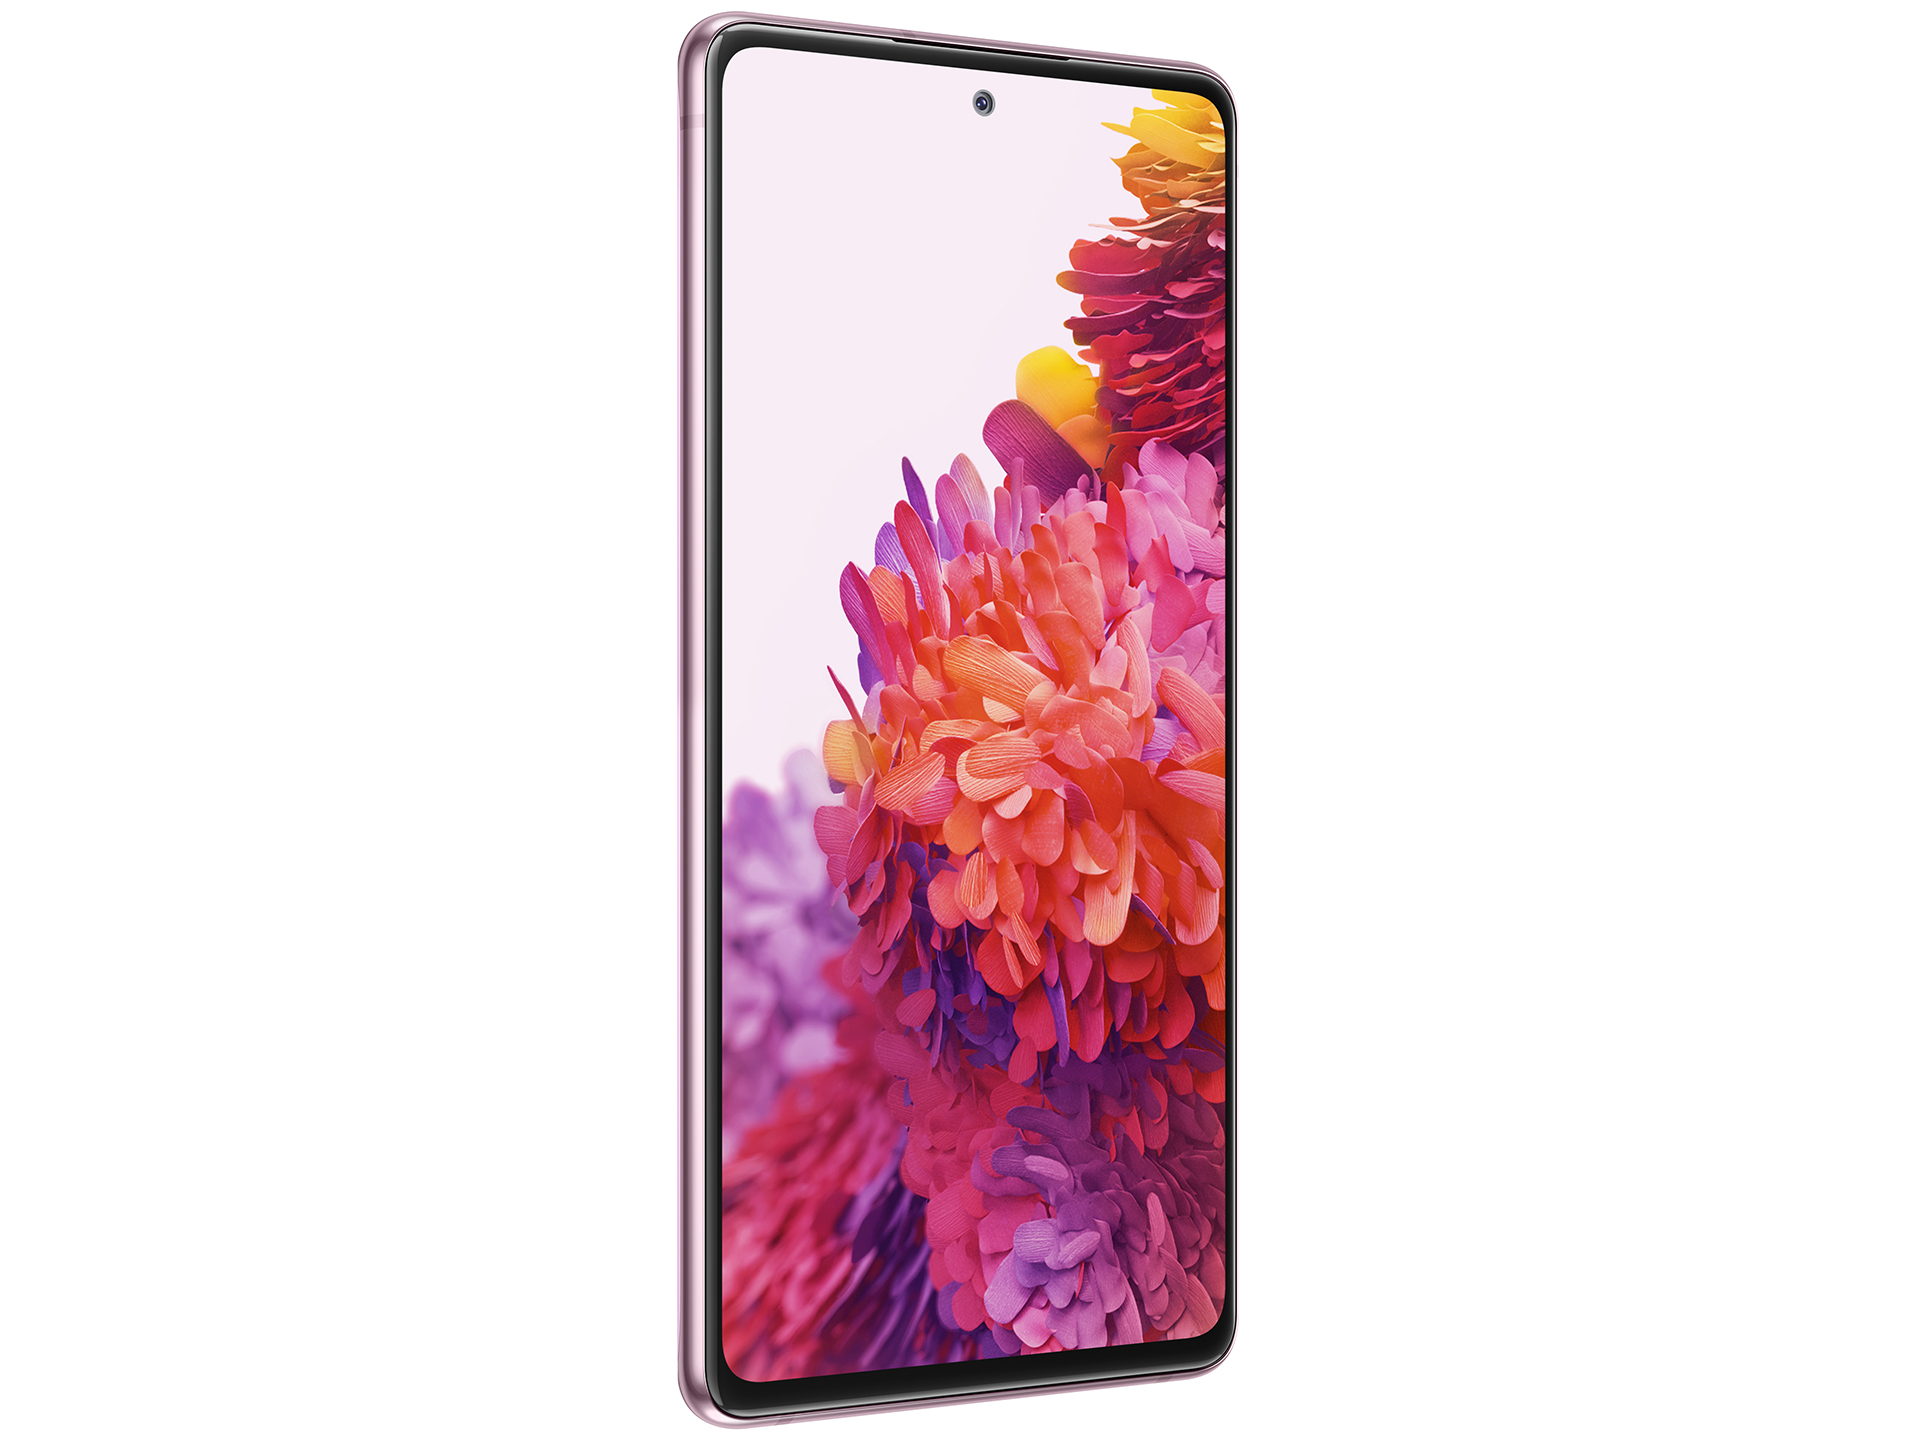 Samsung Galaxy S20 FE 5G là một trong những sản phẩm nổi bật nhất của Samsung năm nay với vẻ ngoài quyến rũ và tính năng vượt trội. Hãy xem hình ảnh liên quan để tận hưởng màn hình sáng, hình ảnh sắc nét và hiệu suất tuyệt vời của chiếc điện thoại này.